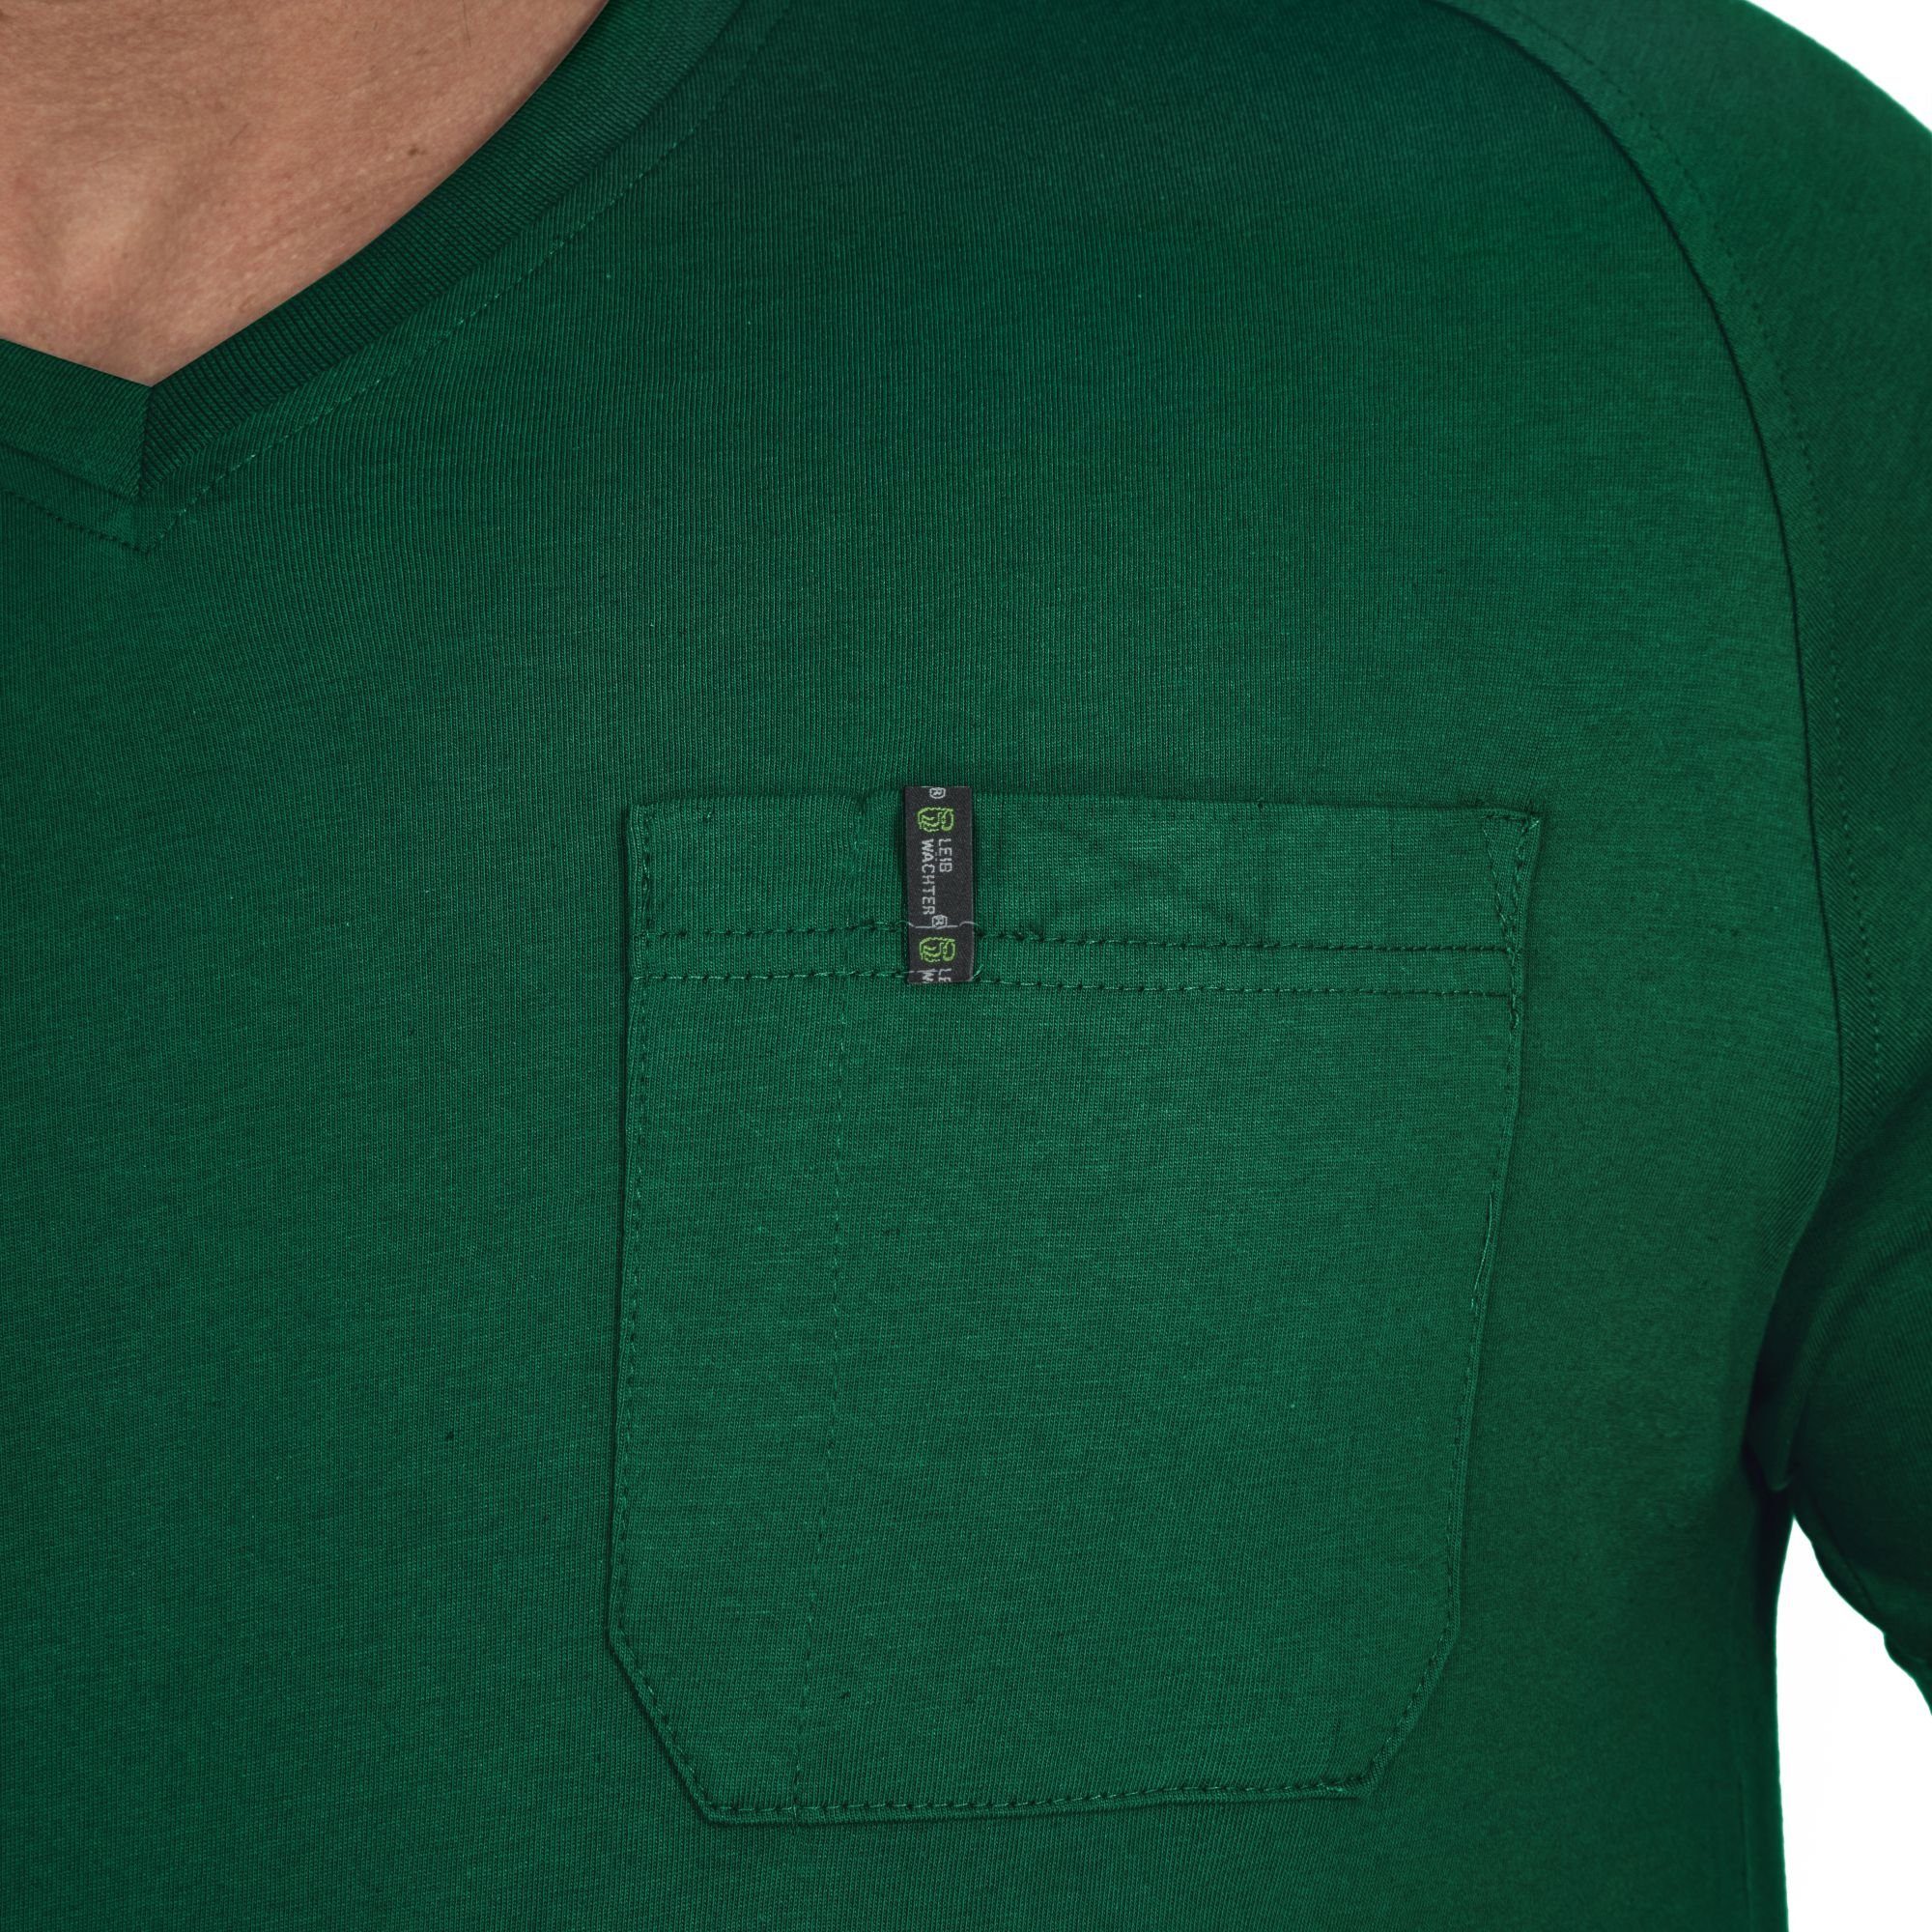 Herren T-Shirt grün T-Shirt Flex-Line Leibwächter